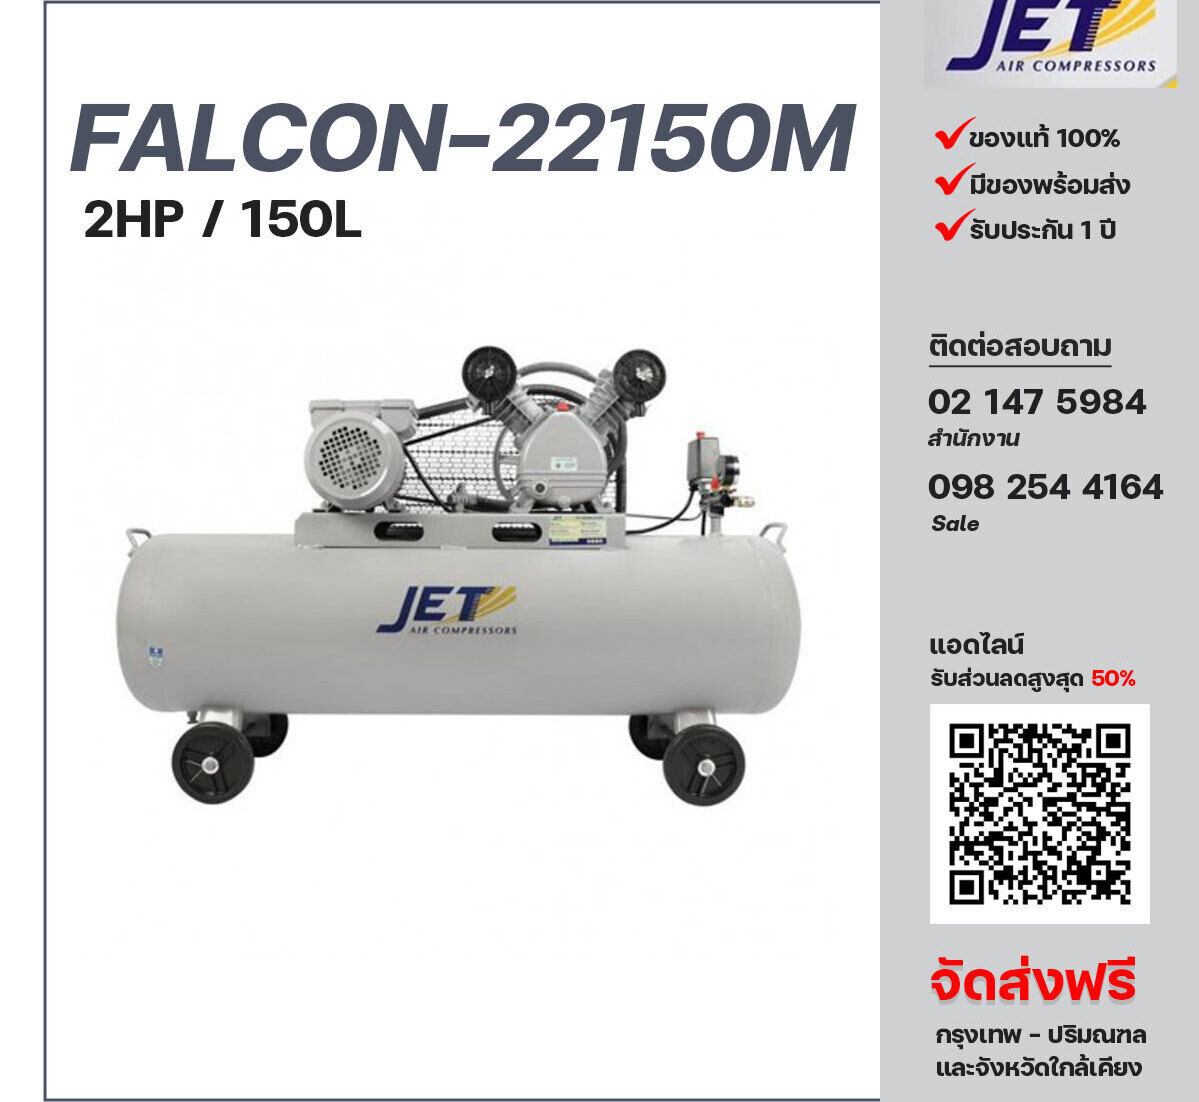 ปั๊มลมเจ็ท JET รุ่น FALCON-22150M 220V ปั๊มลมลูกสูบ ขนาด 2 สูบ 2  แรงม้า 150 ลิตร JET พร้อมมอเตอร์ ไฟ 220V ส่งฟรี กรุงเทพฯ-ปริมณฑล รับประกัน 1 ปี